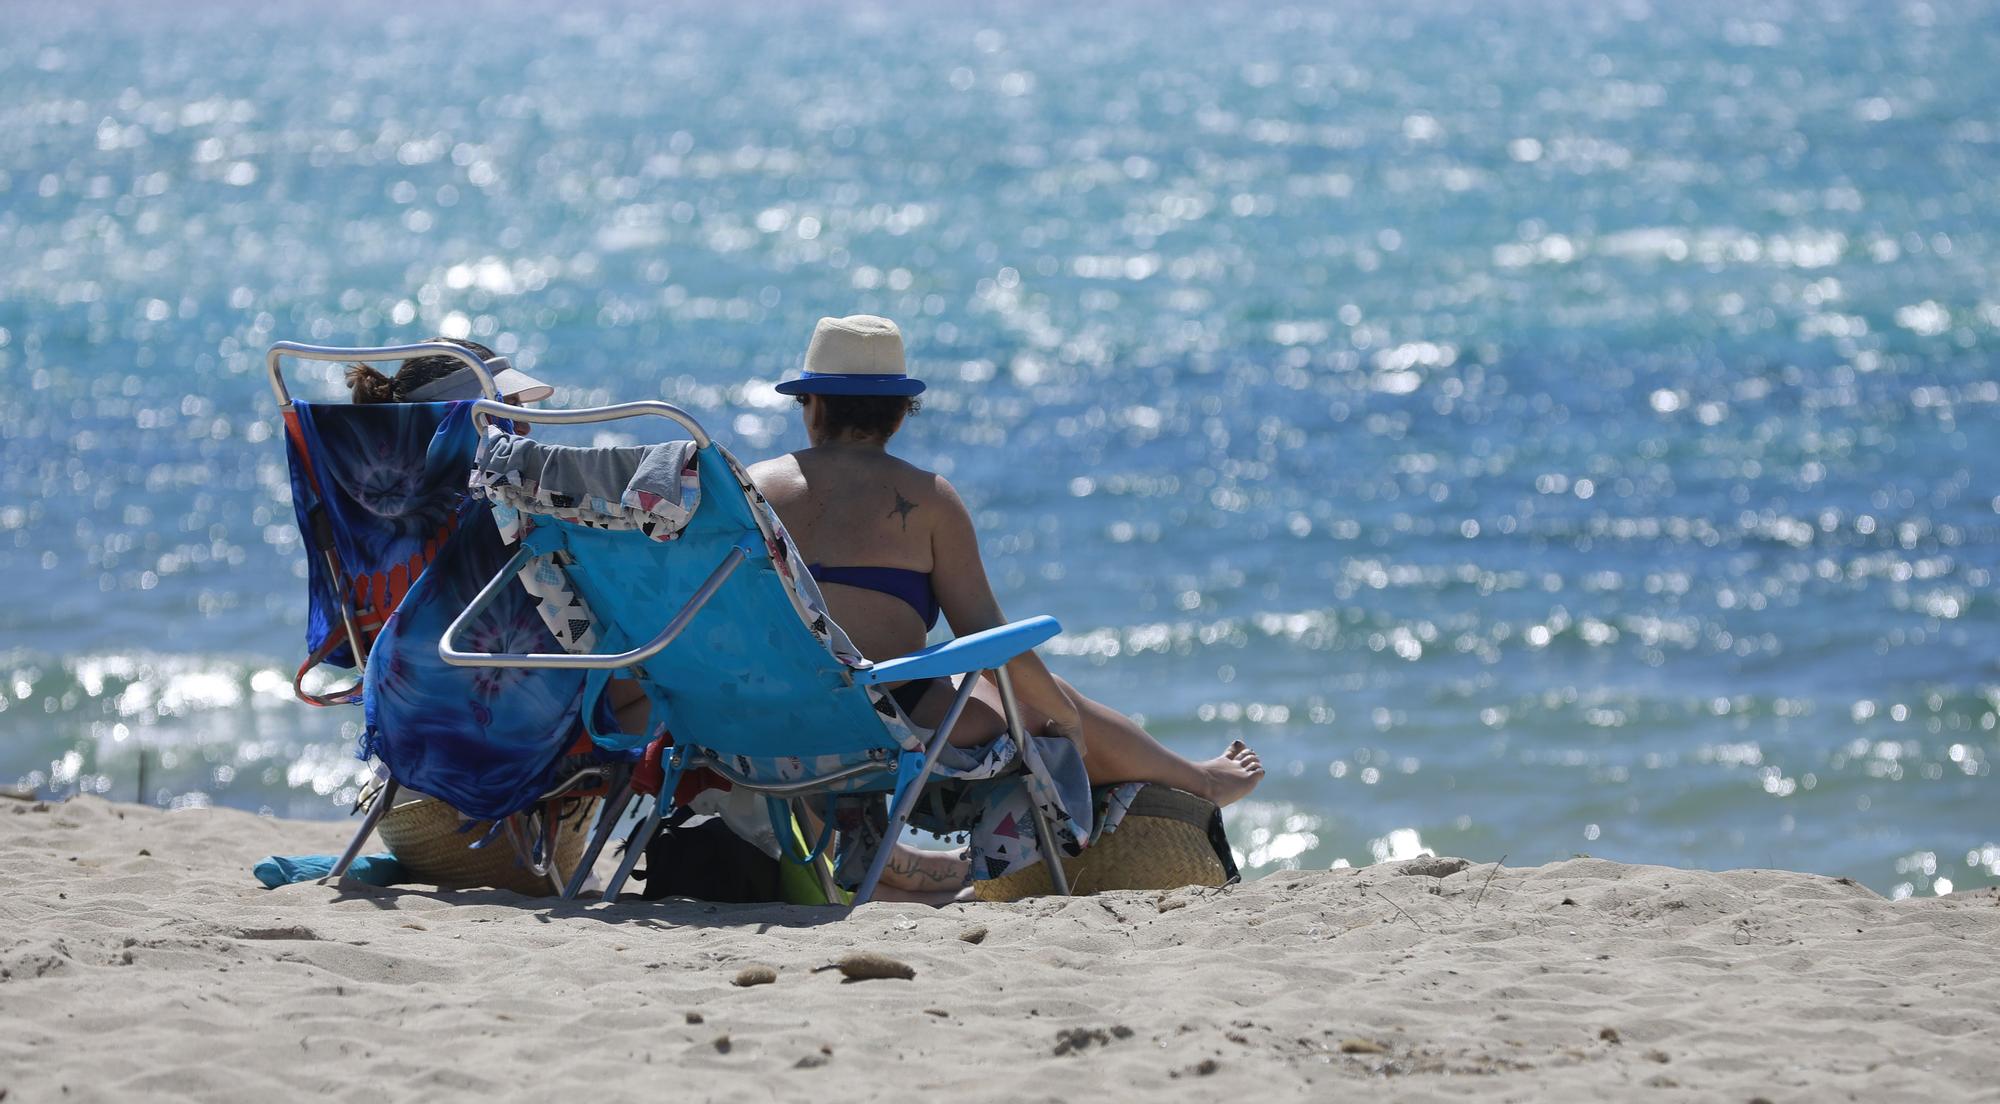 Endlich wieder Mallorca: So genießen die Menschen den Strand an der Playa de Palma